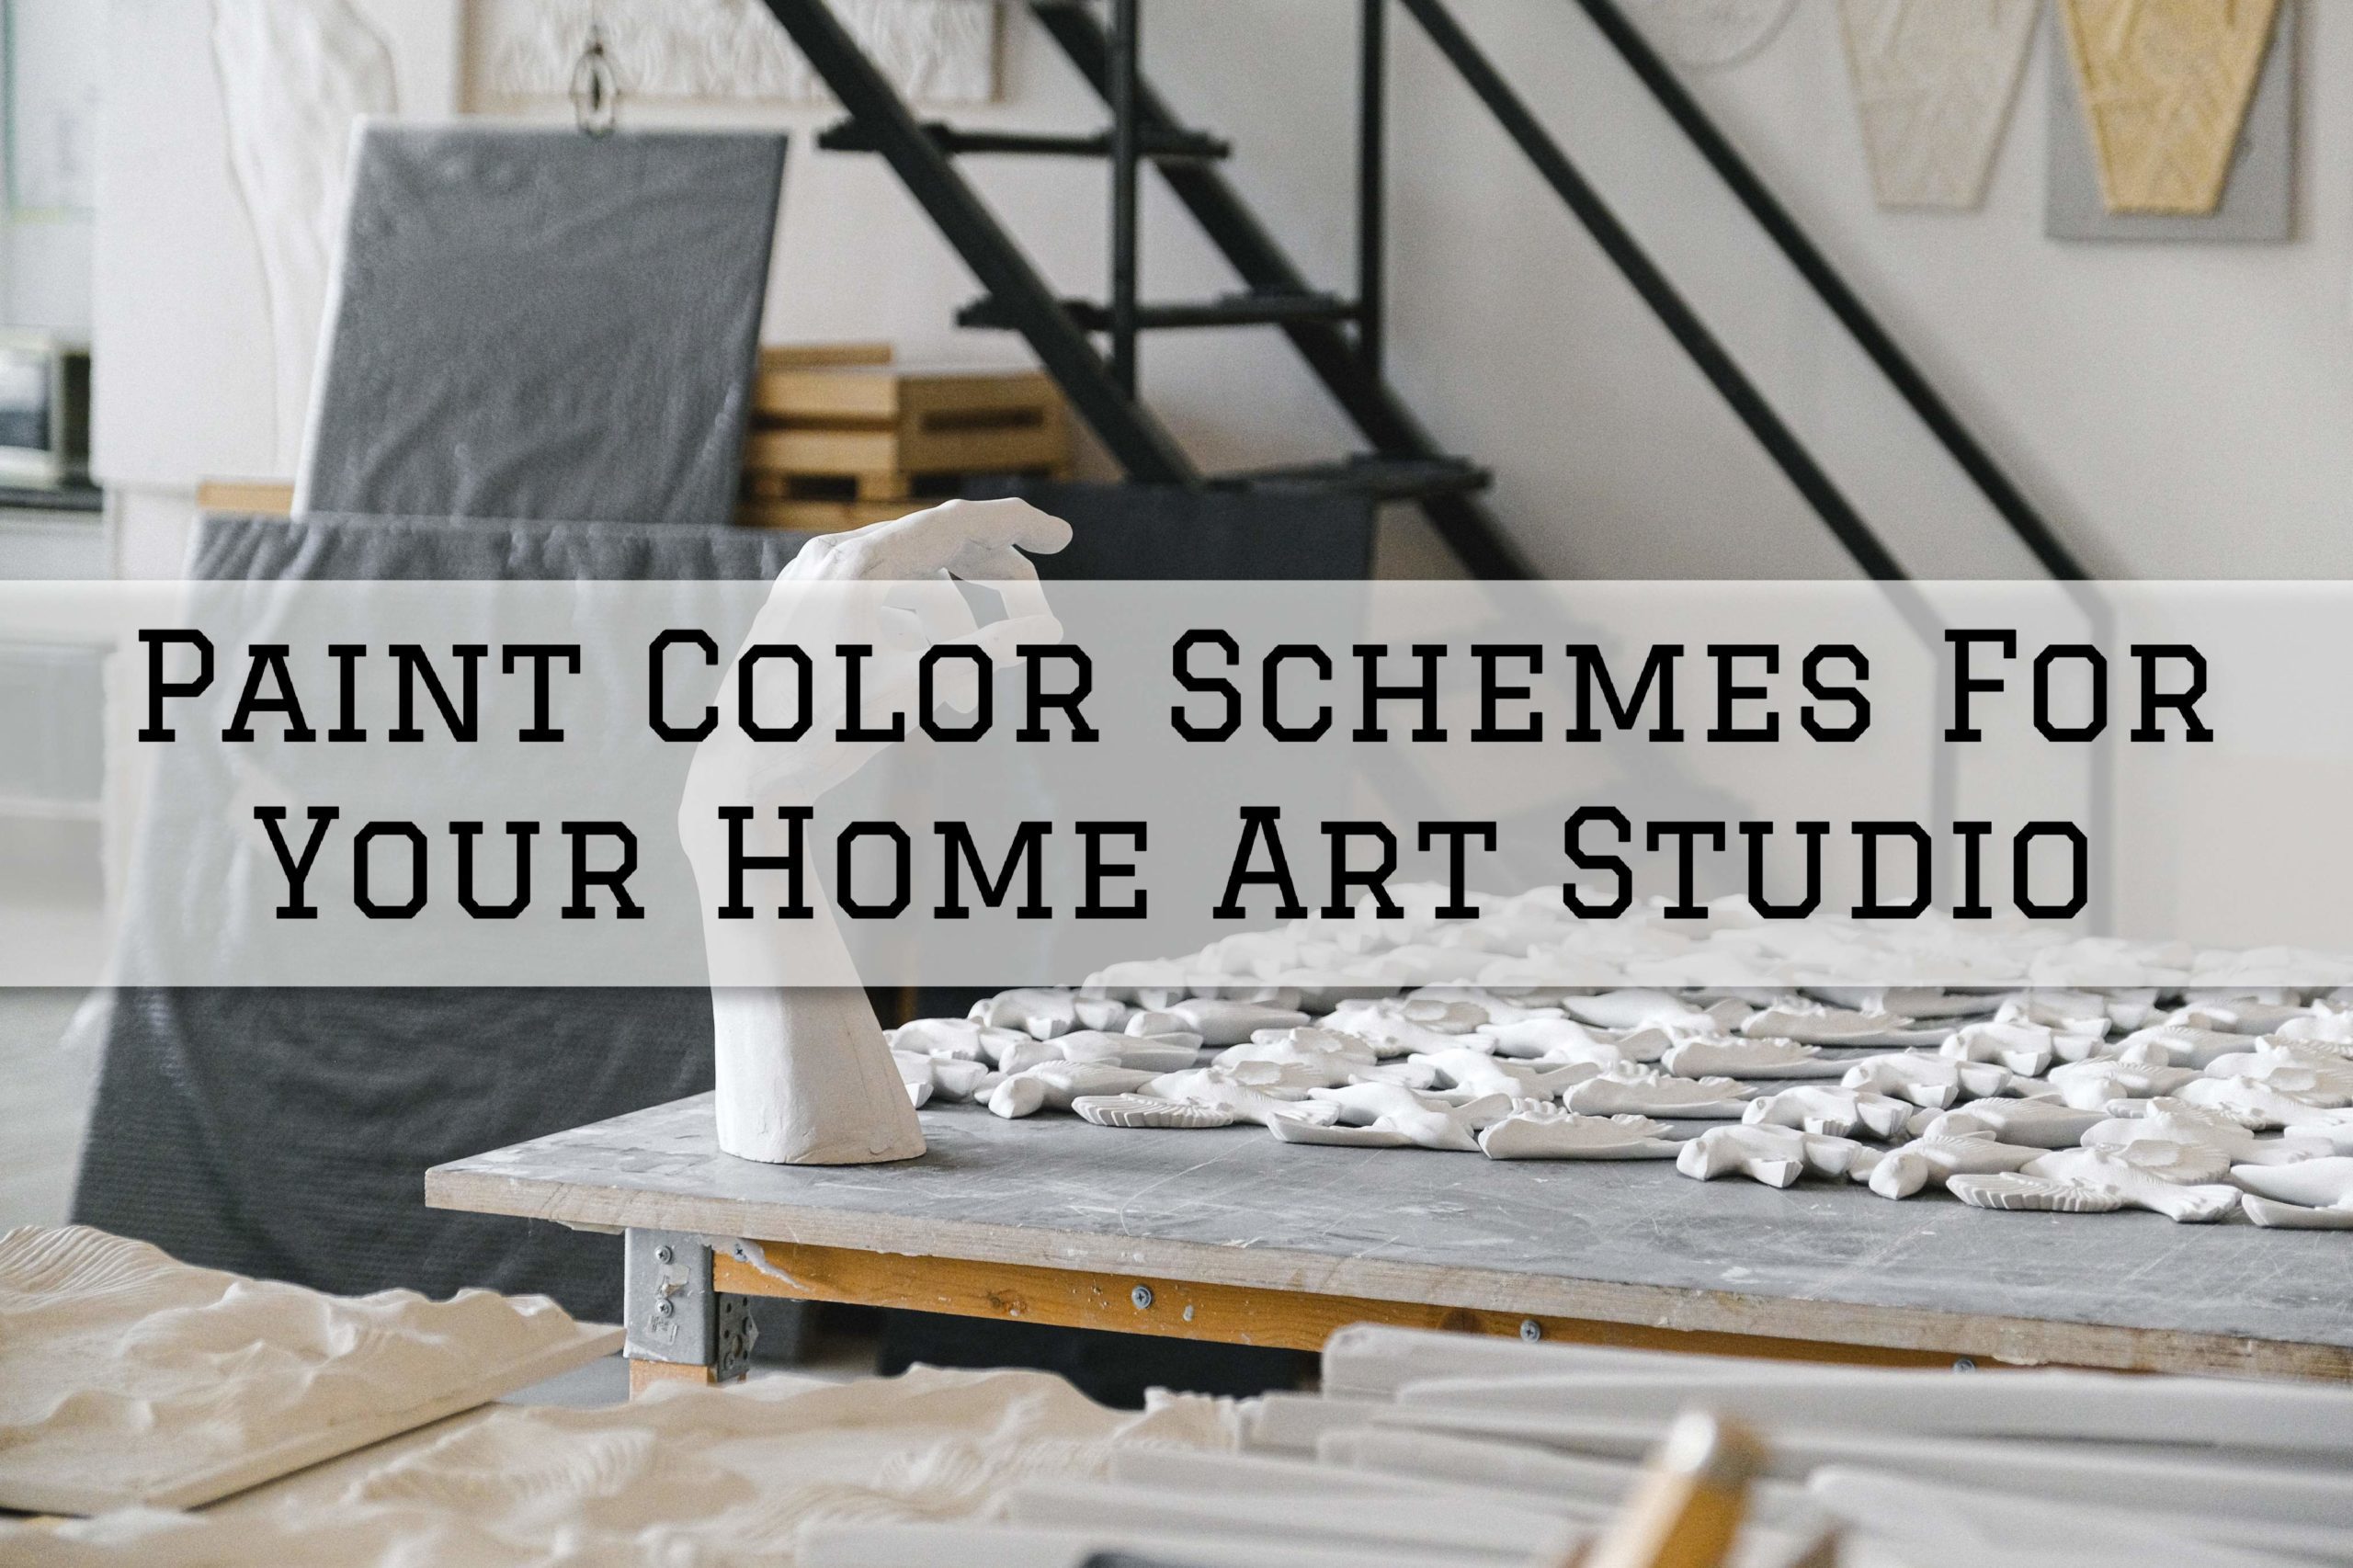 2022 05 29 Prime Painting Phoenix AZ Paint Color Schemes For Your Home Art Studio Scaled 1 